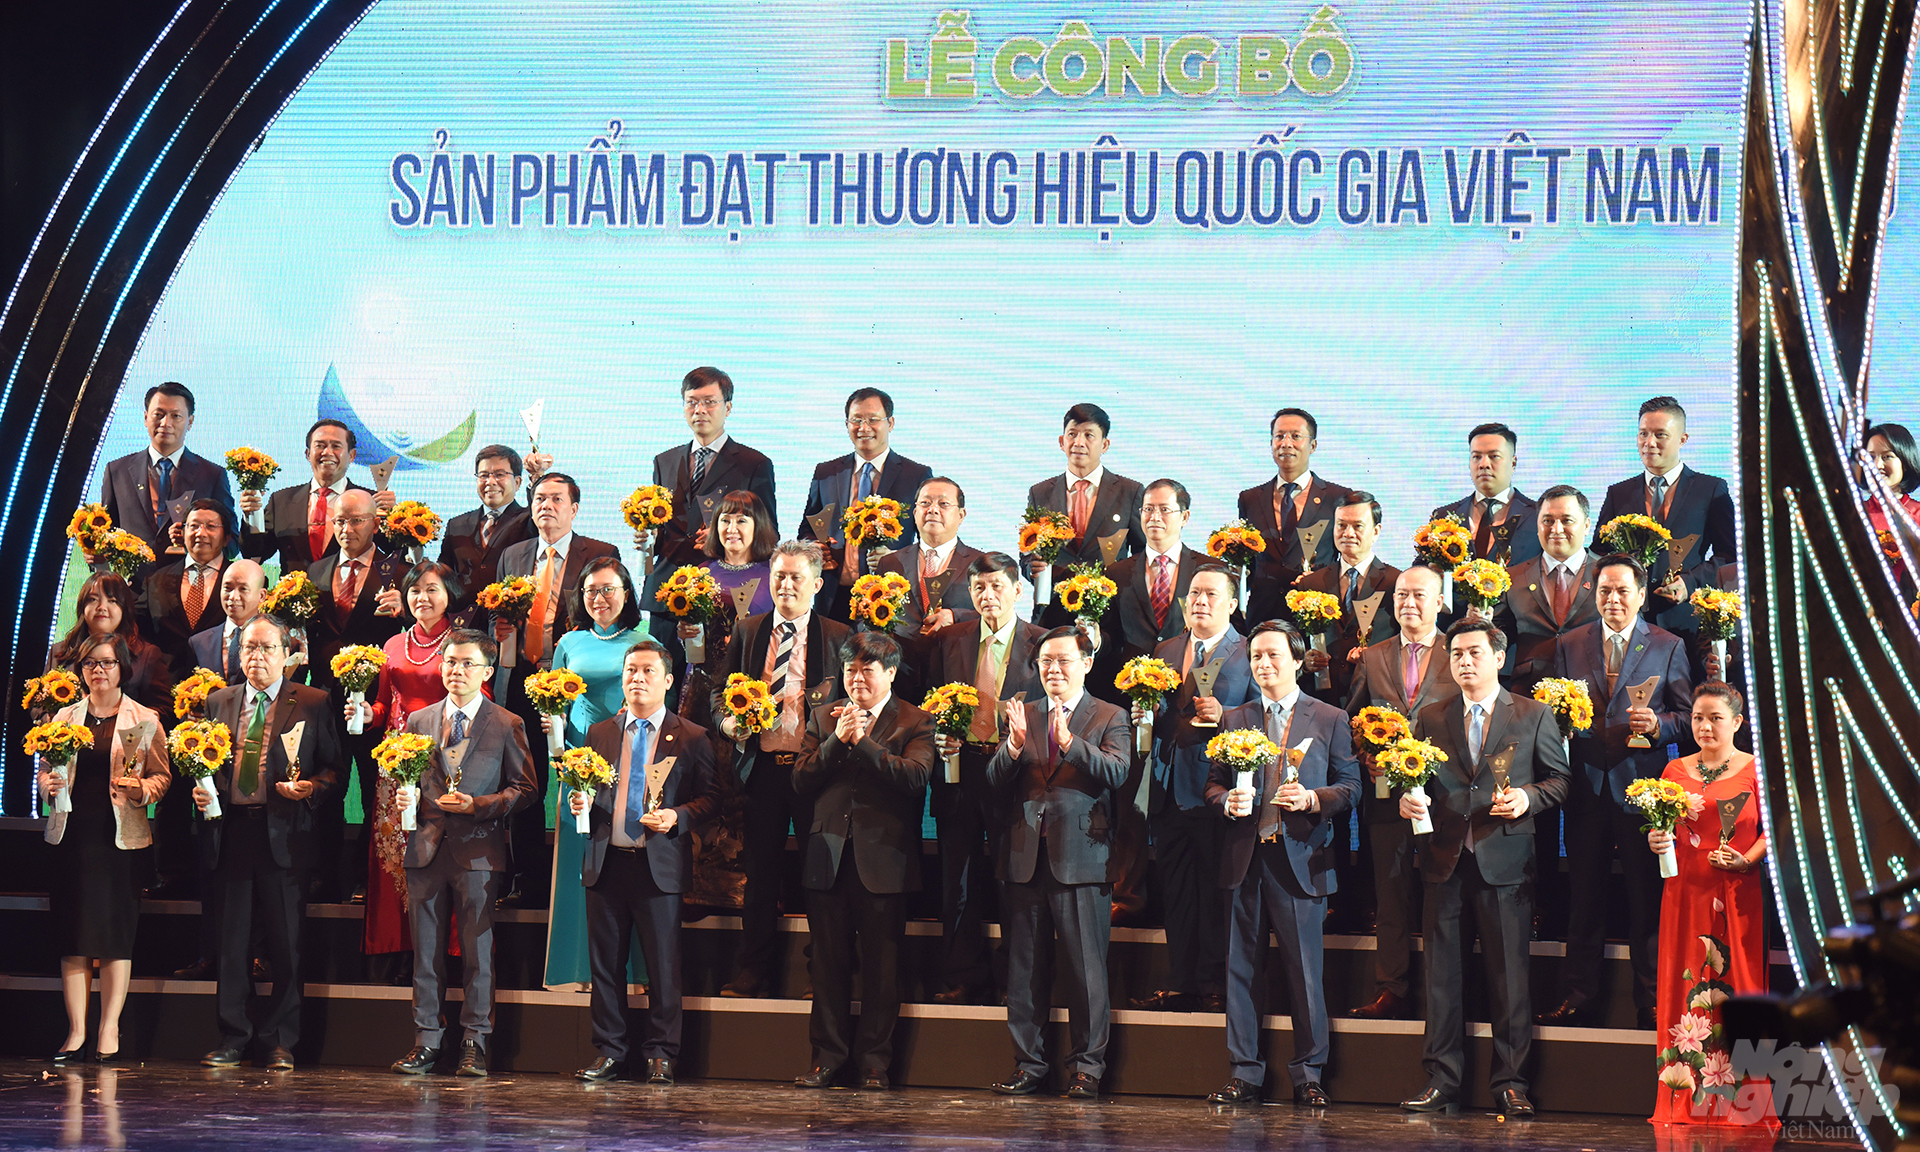 Các doanh nghiệp được vinh danh Thương hiệu Quốc gia Việt Nam 2020. Ảnh: Hùng Thắng.